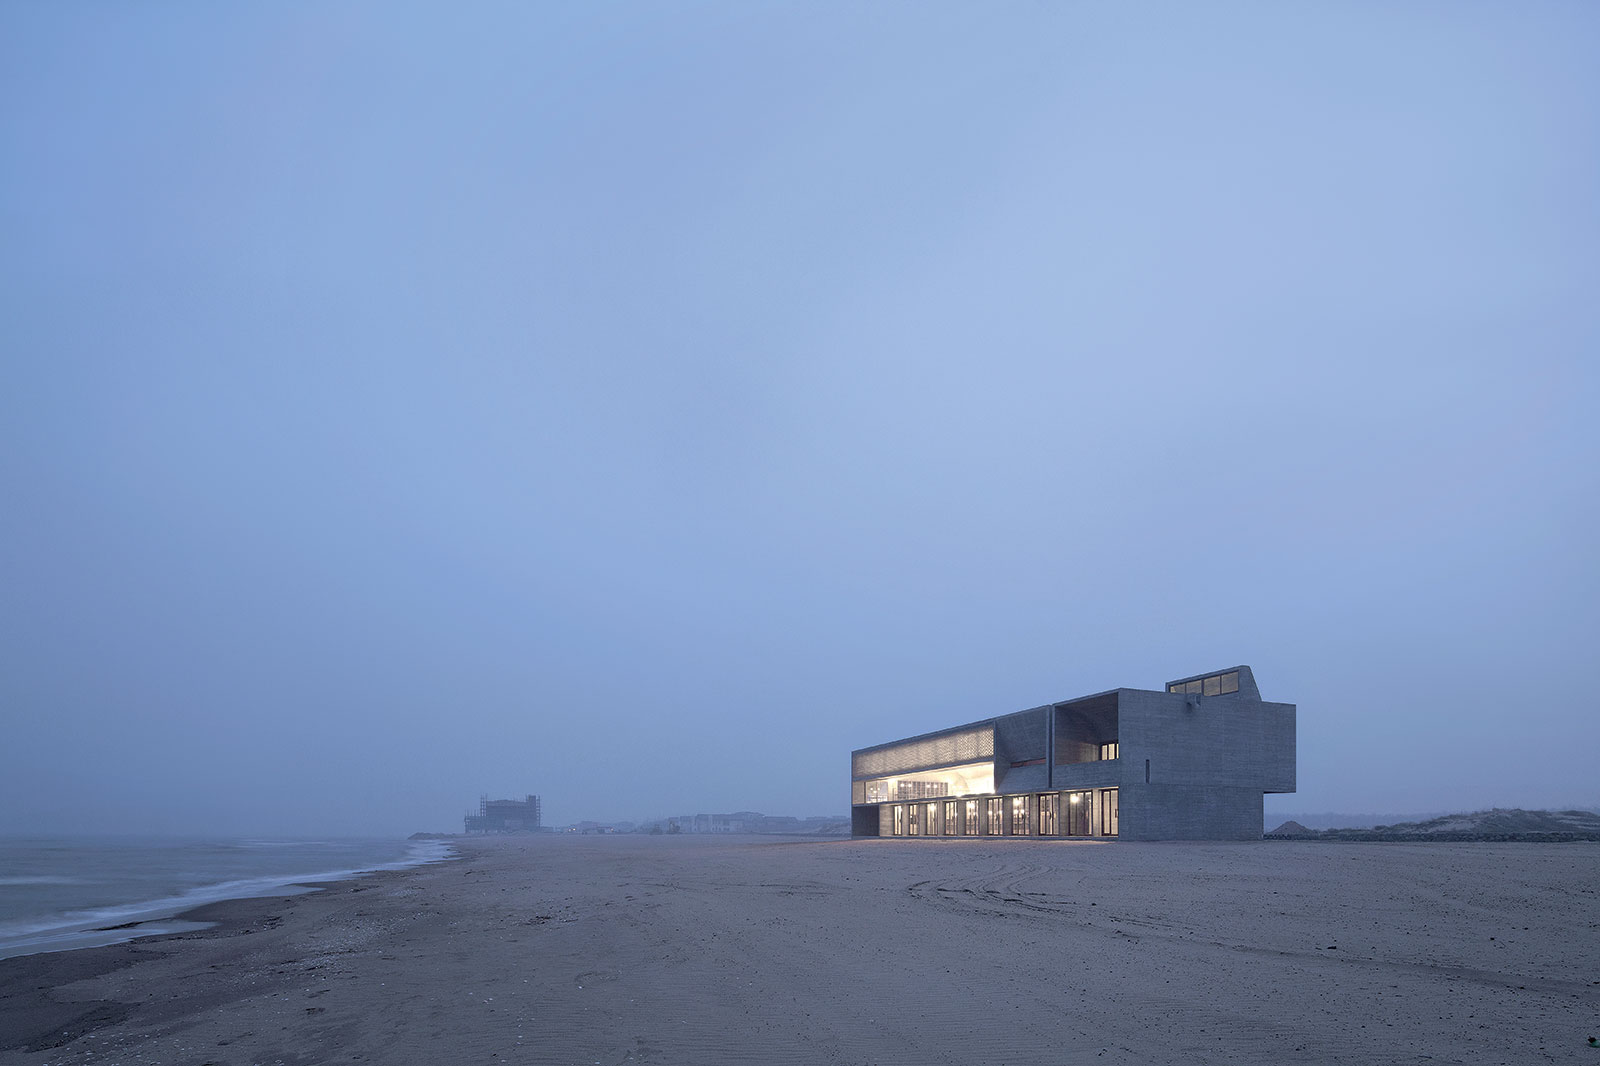 Knižnica na morskom pobreží. Foto: Xia Zhi